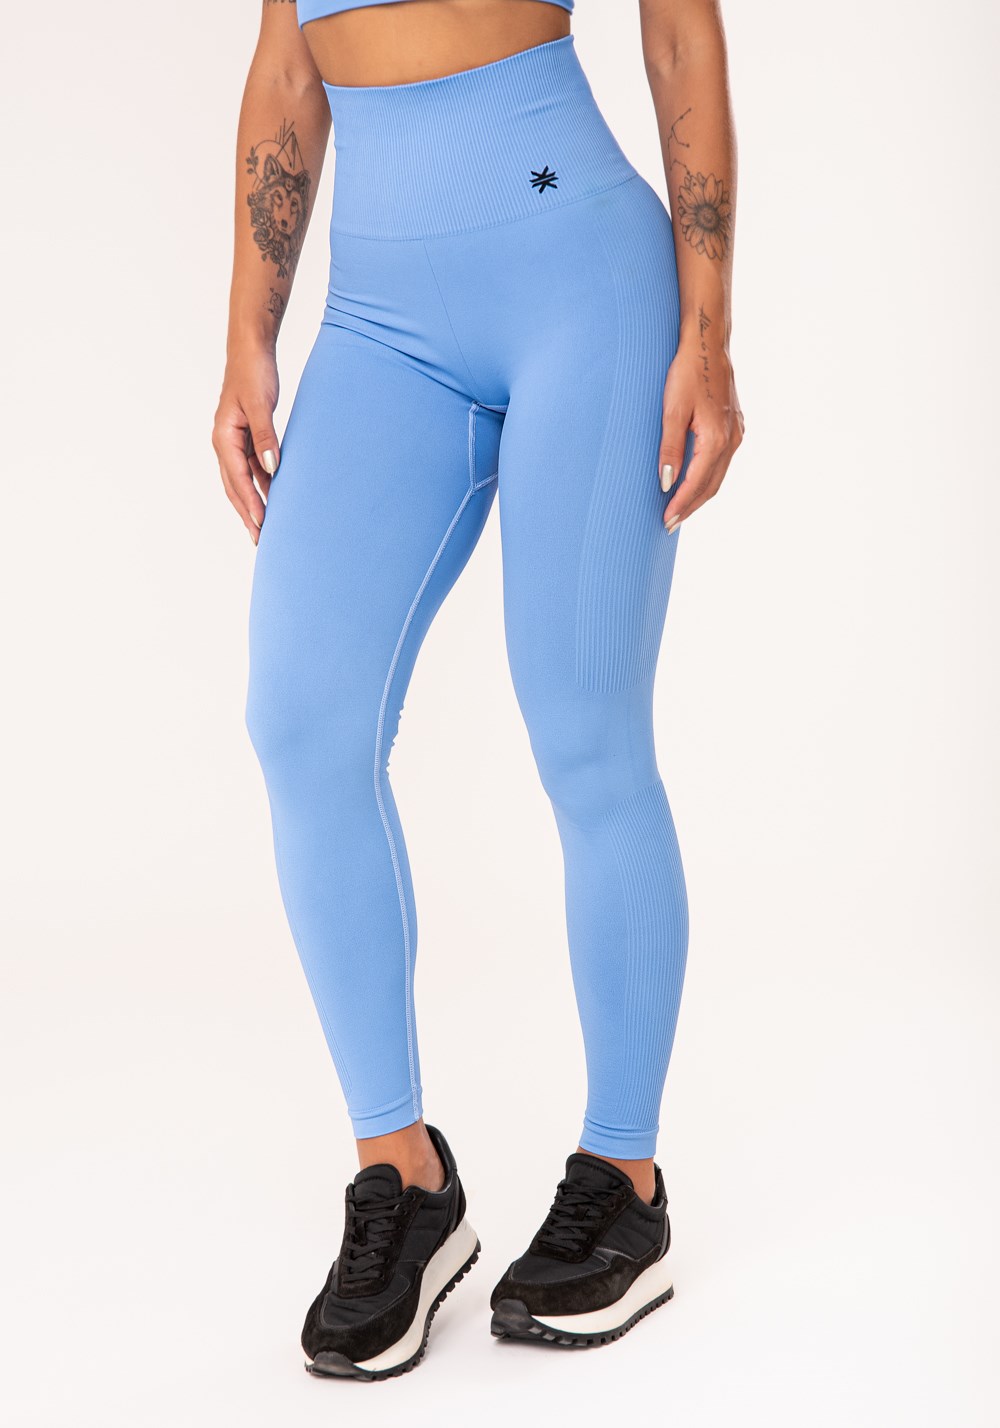 Legging fitness feminina azul petróleo com recorte canelado seamless